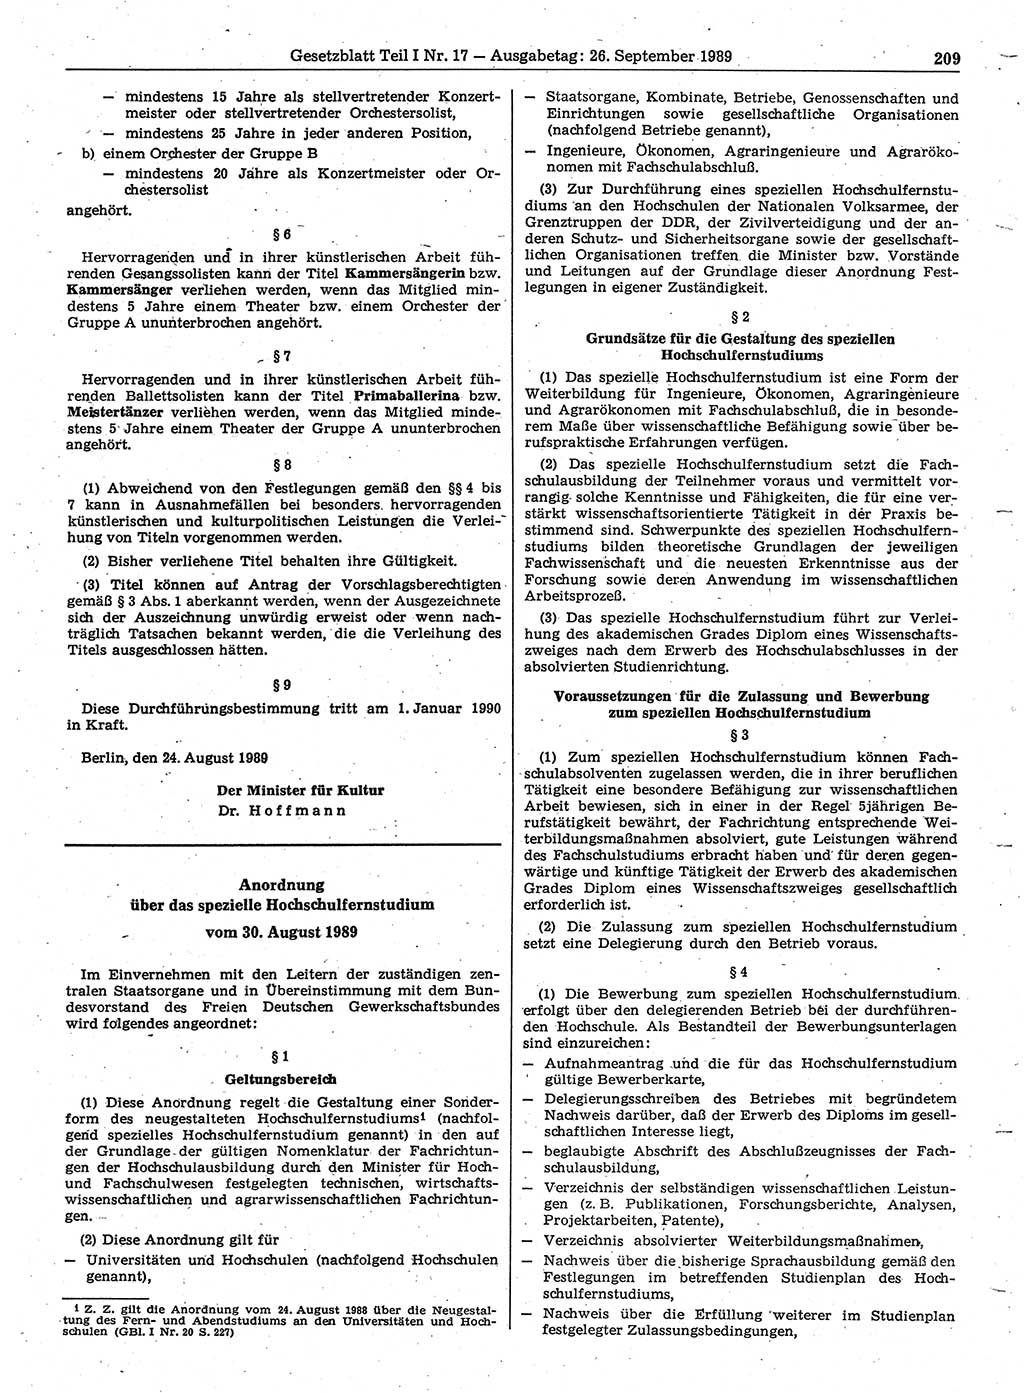 Gesetzblatt (GBl.) der Deutschen Demokratischen Republik (DDR) Teil Ⅰ 1989, Seite 209 (GBl. DDR Ⅰ 1989, S. 209)